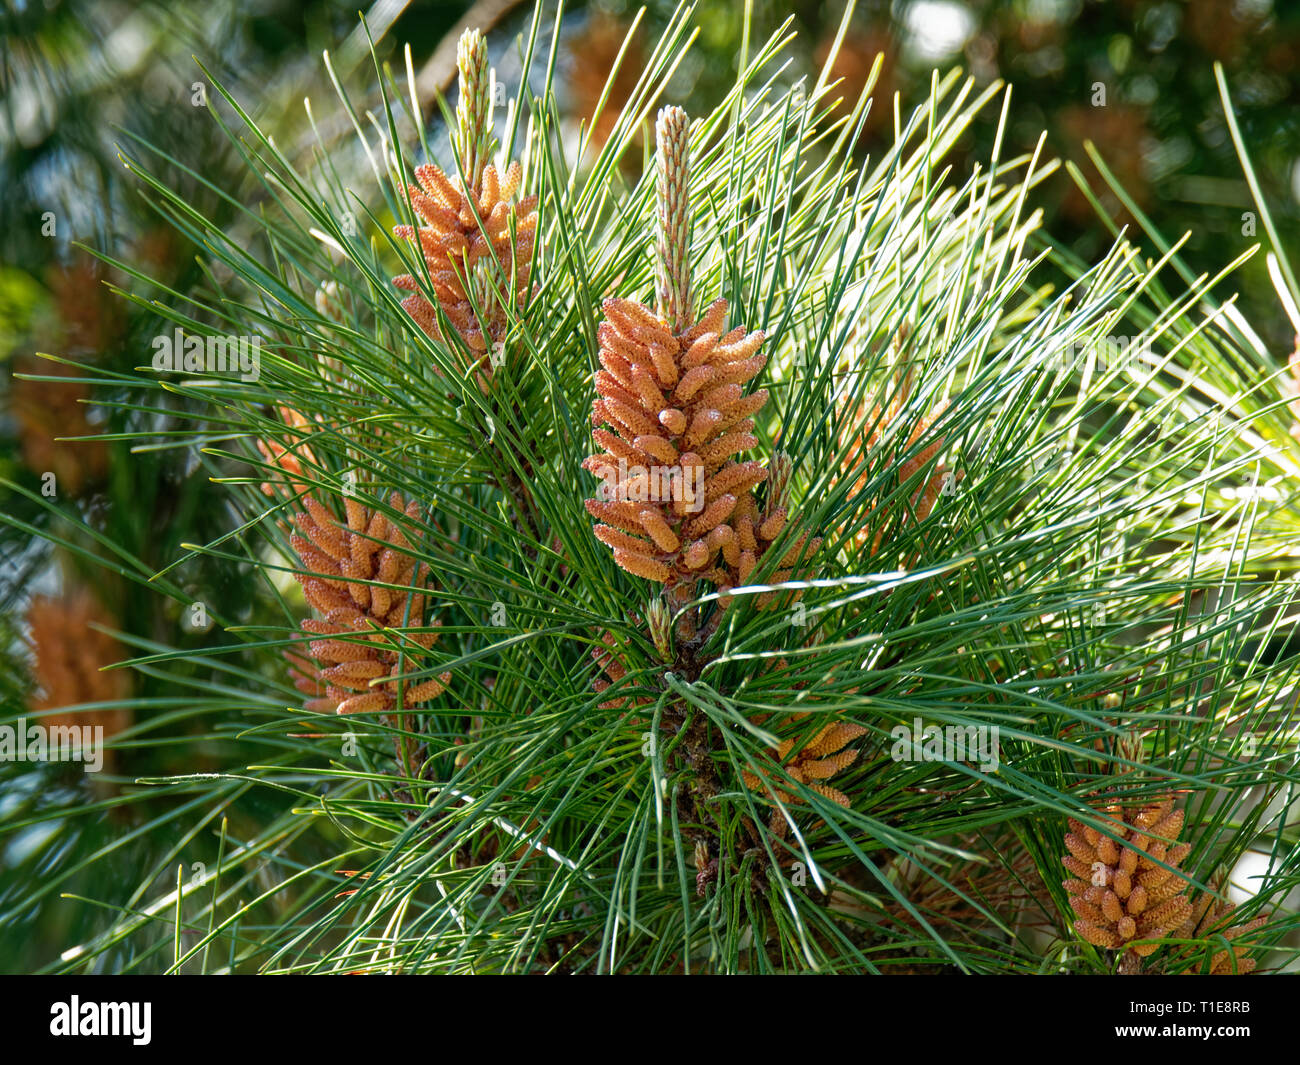 Pine Tree, Cones and Needles. UK Stock Photo